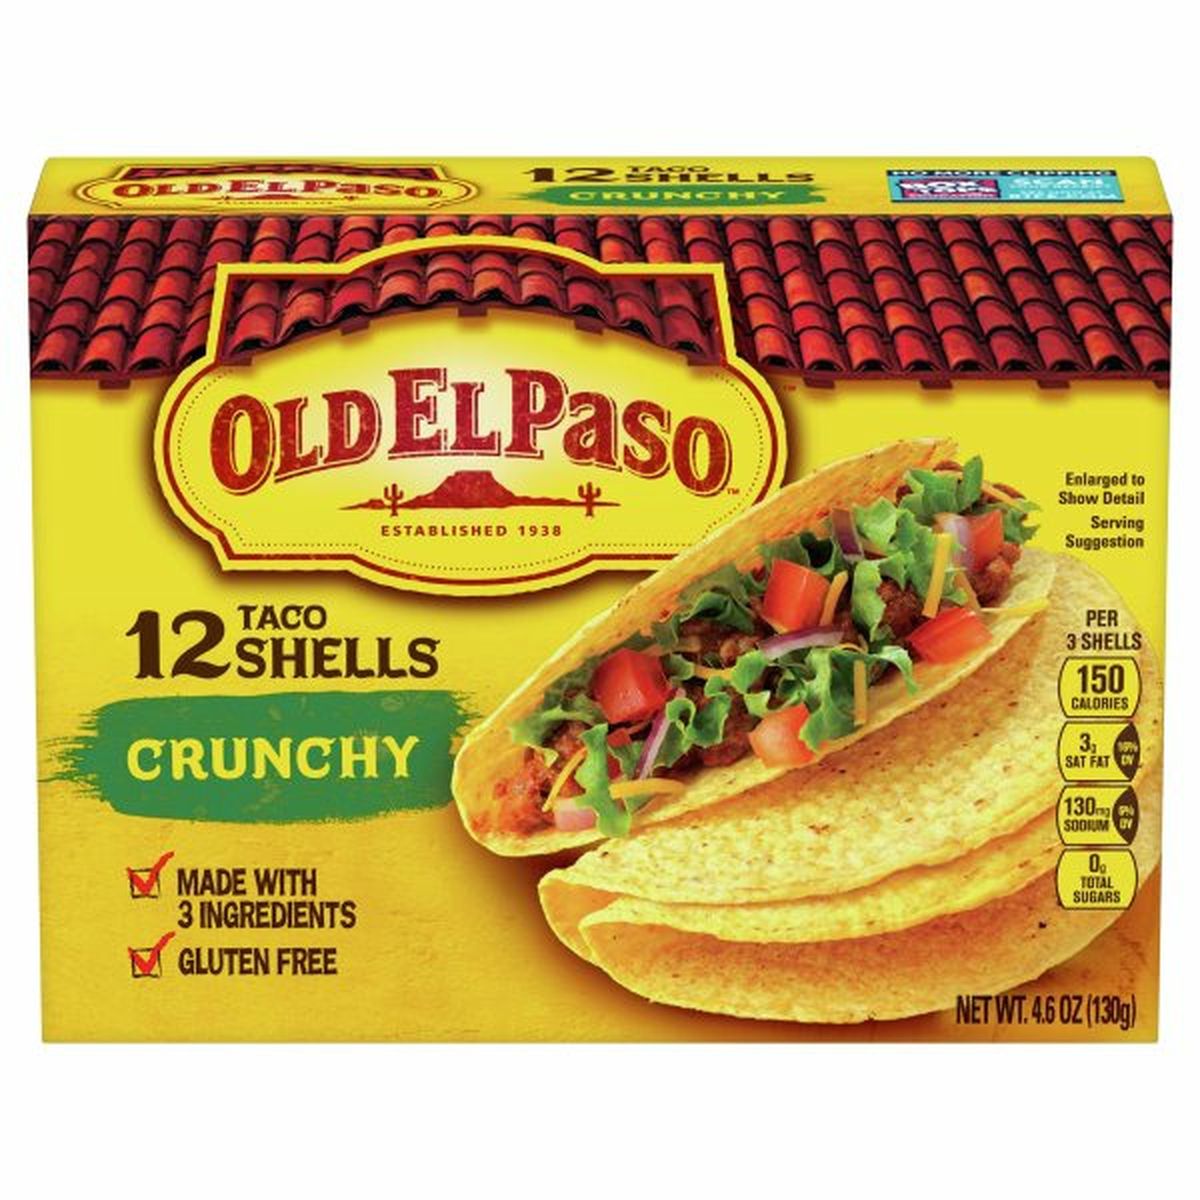 Calories in Old El Paso Taco Shells, Crunchy